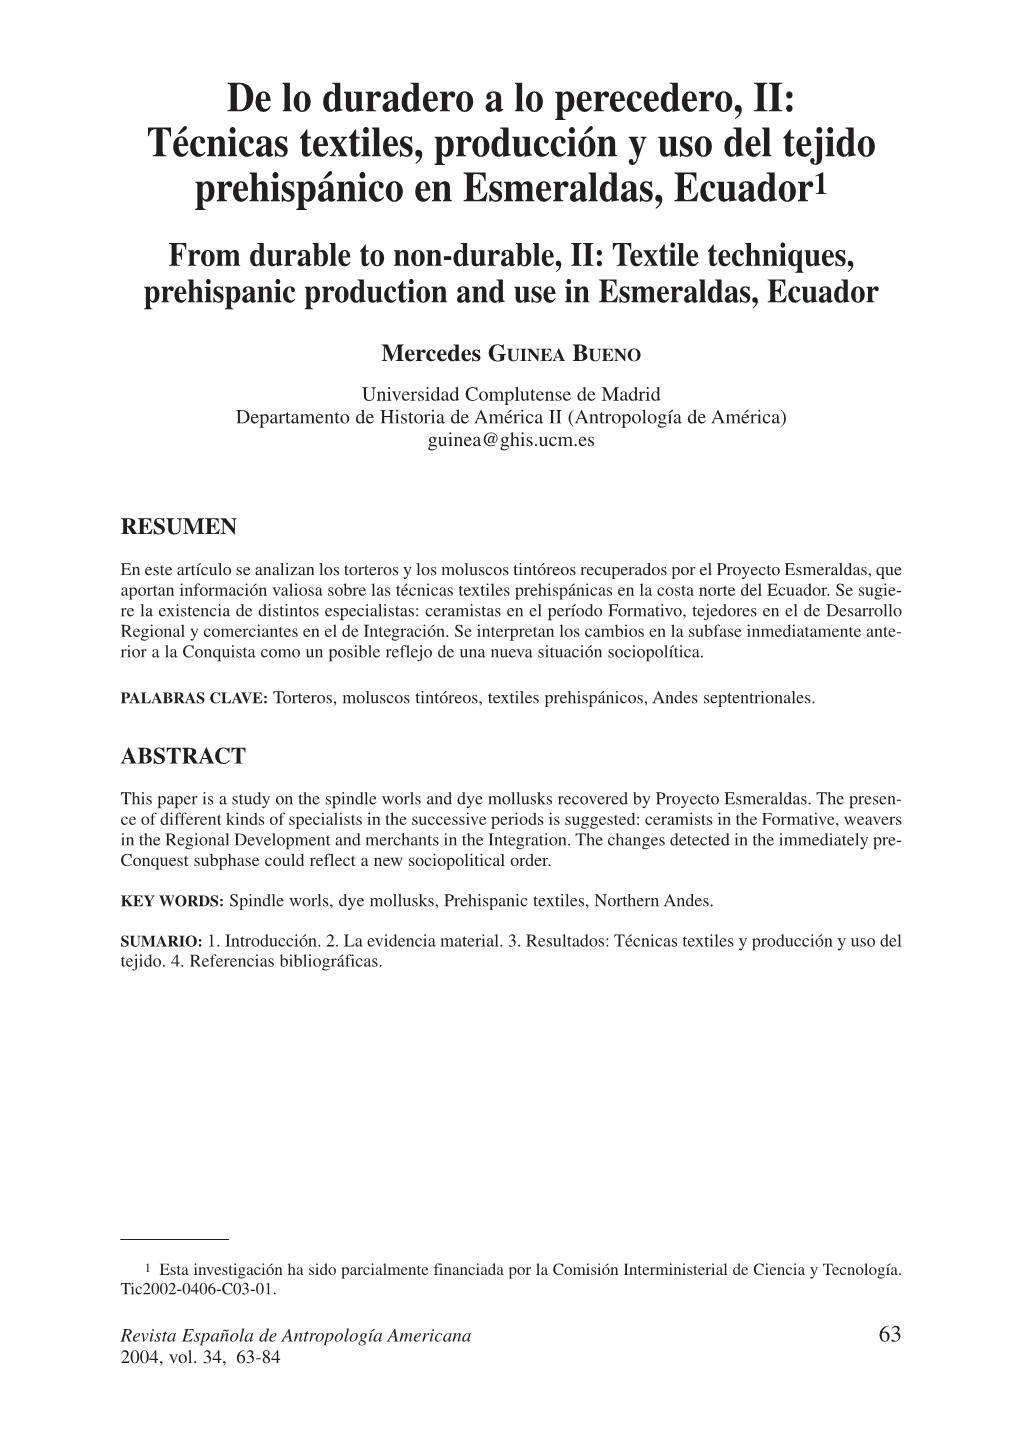 De Lo Duradero a Lo Perecedero, II: Técnicas Textiles, Producción Y Uso Del Tejido Prehispánico En Esmeraldas, Ecuador1